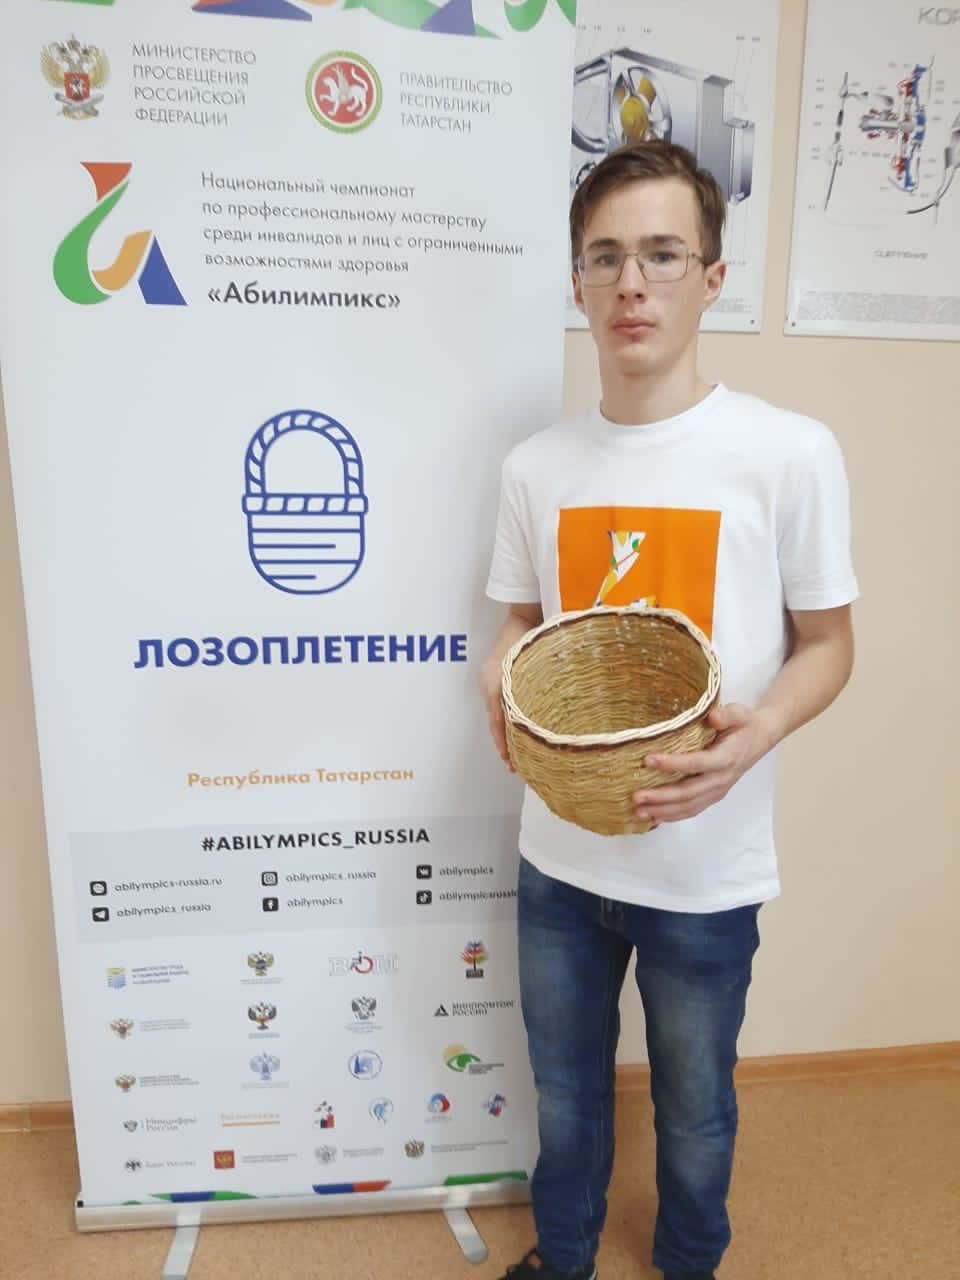 Нурлатцы достойно представили Республику Татарстан в национальном чемпионате